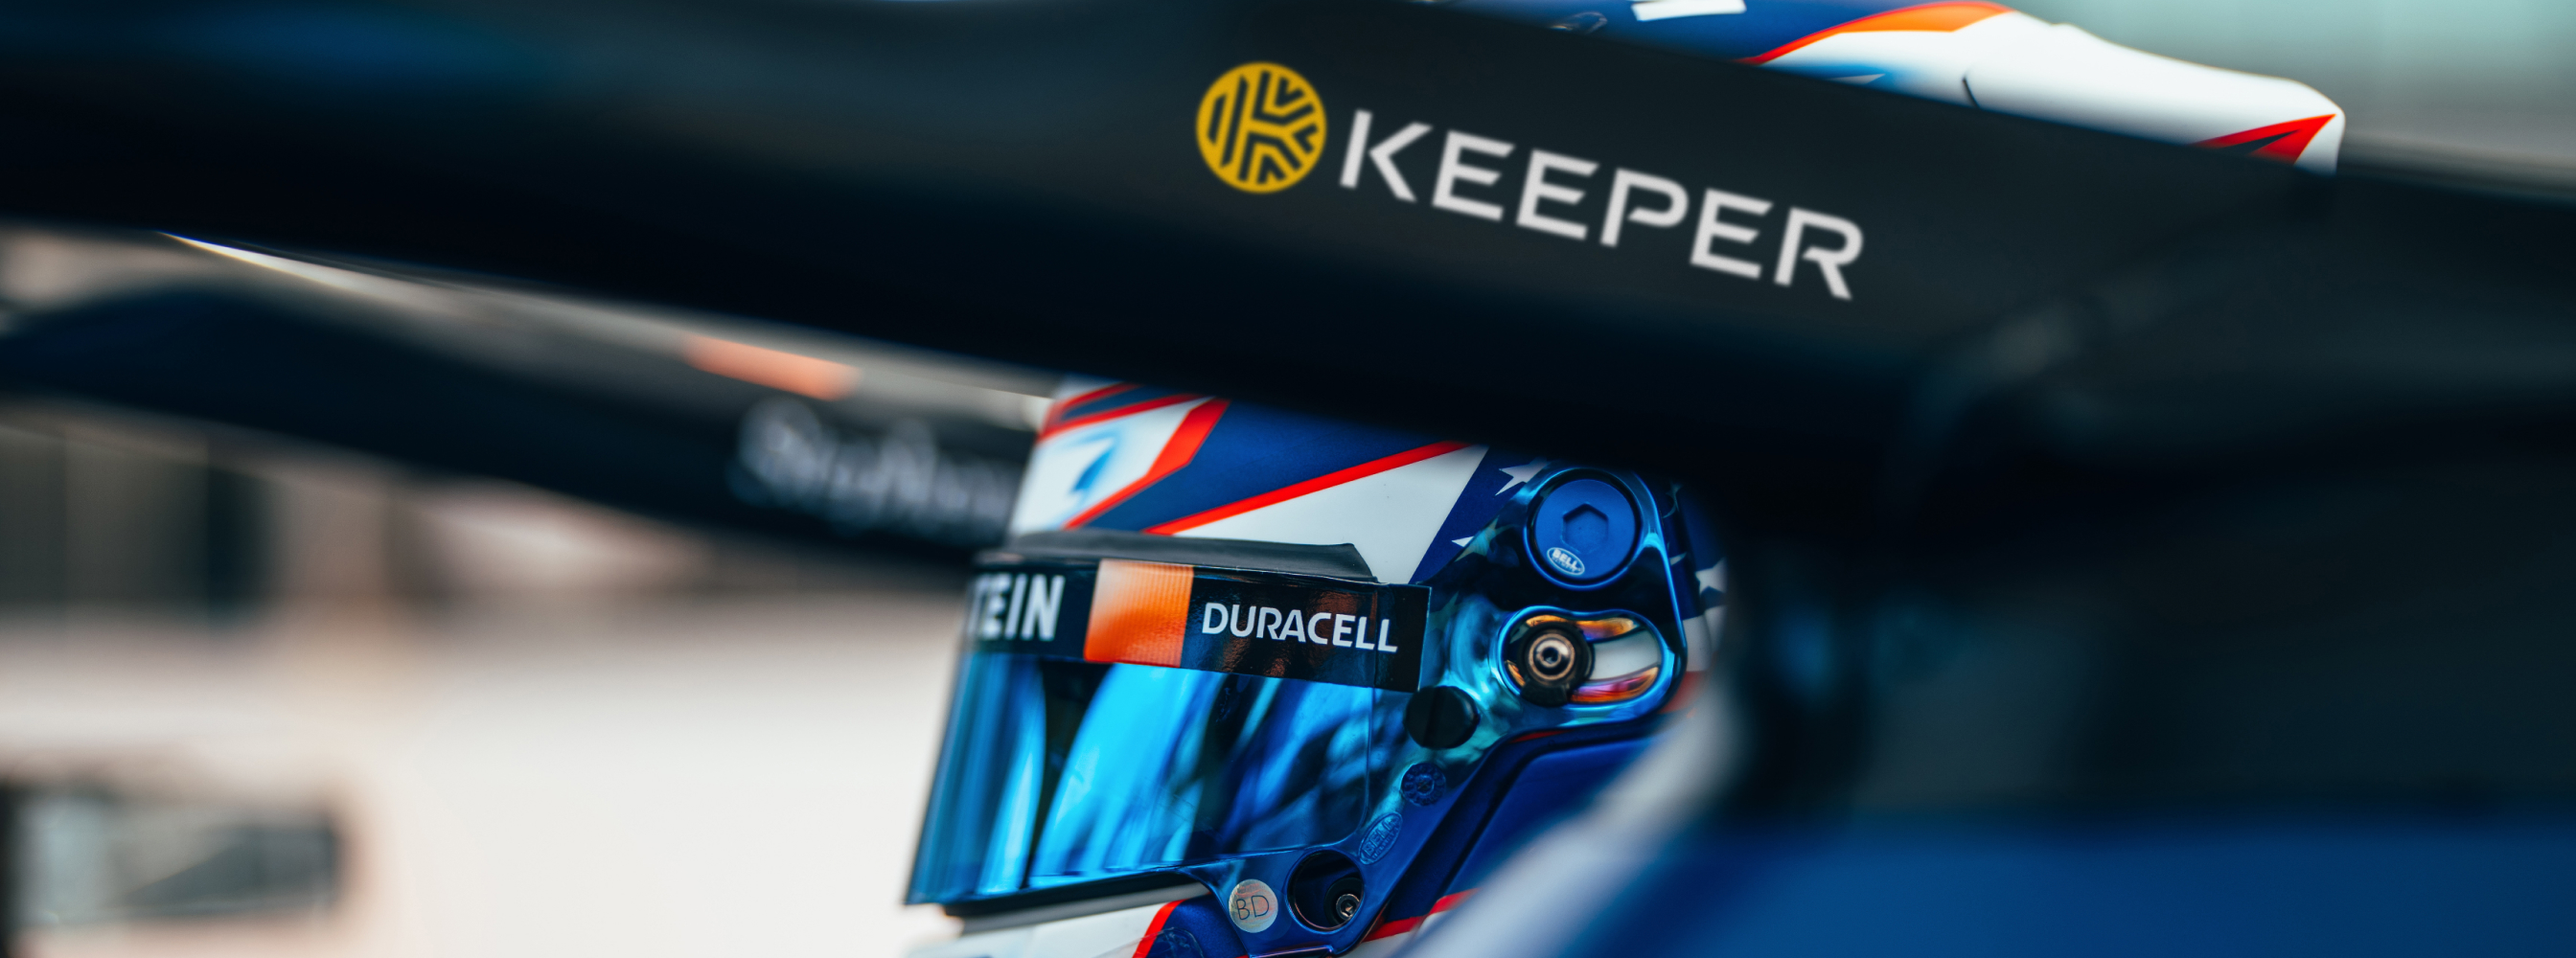 Keeper x Williams Racing - 加速创新